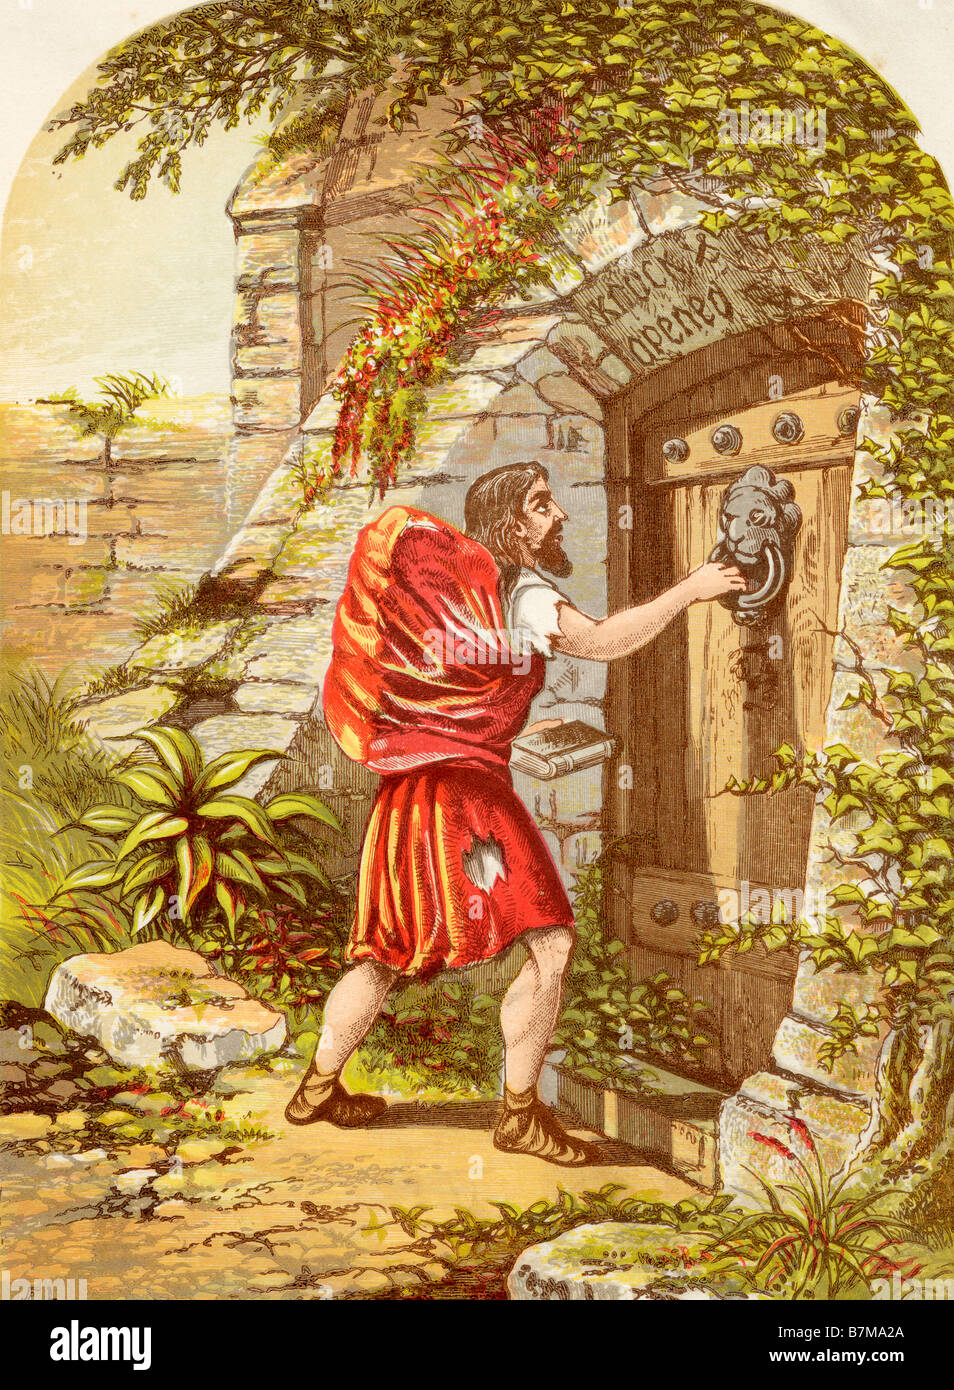 Christian à la barrière. Illustration par un F Lydon. À partir de l'ouvrage Les pèlerins des progrès réalisés par John Bunyan, publié c. 1880. Banque D'Images